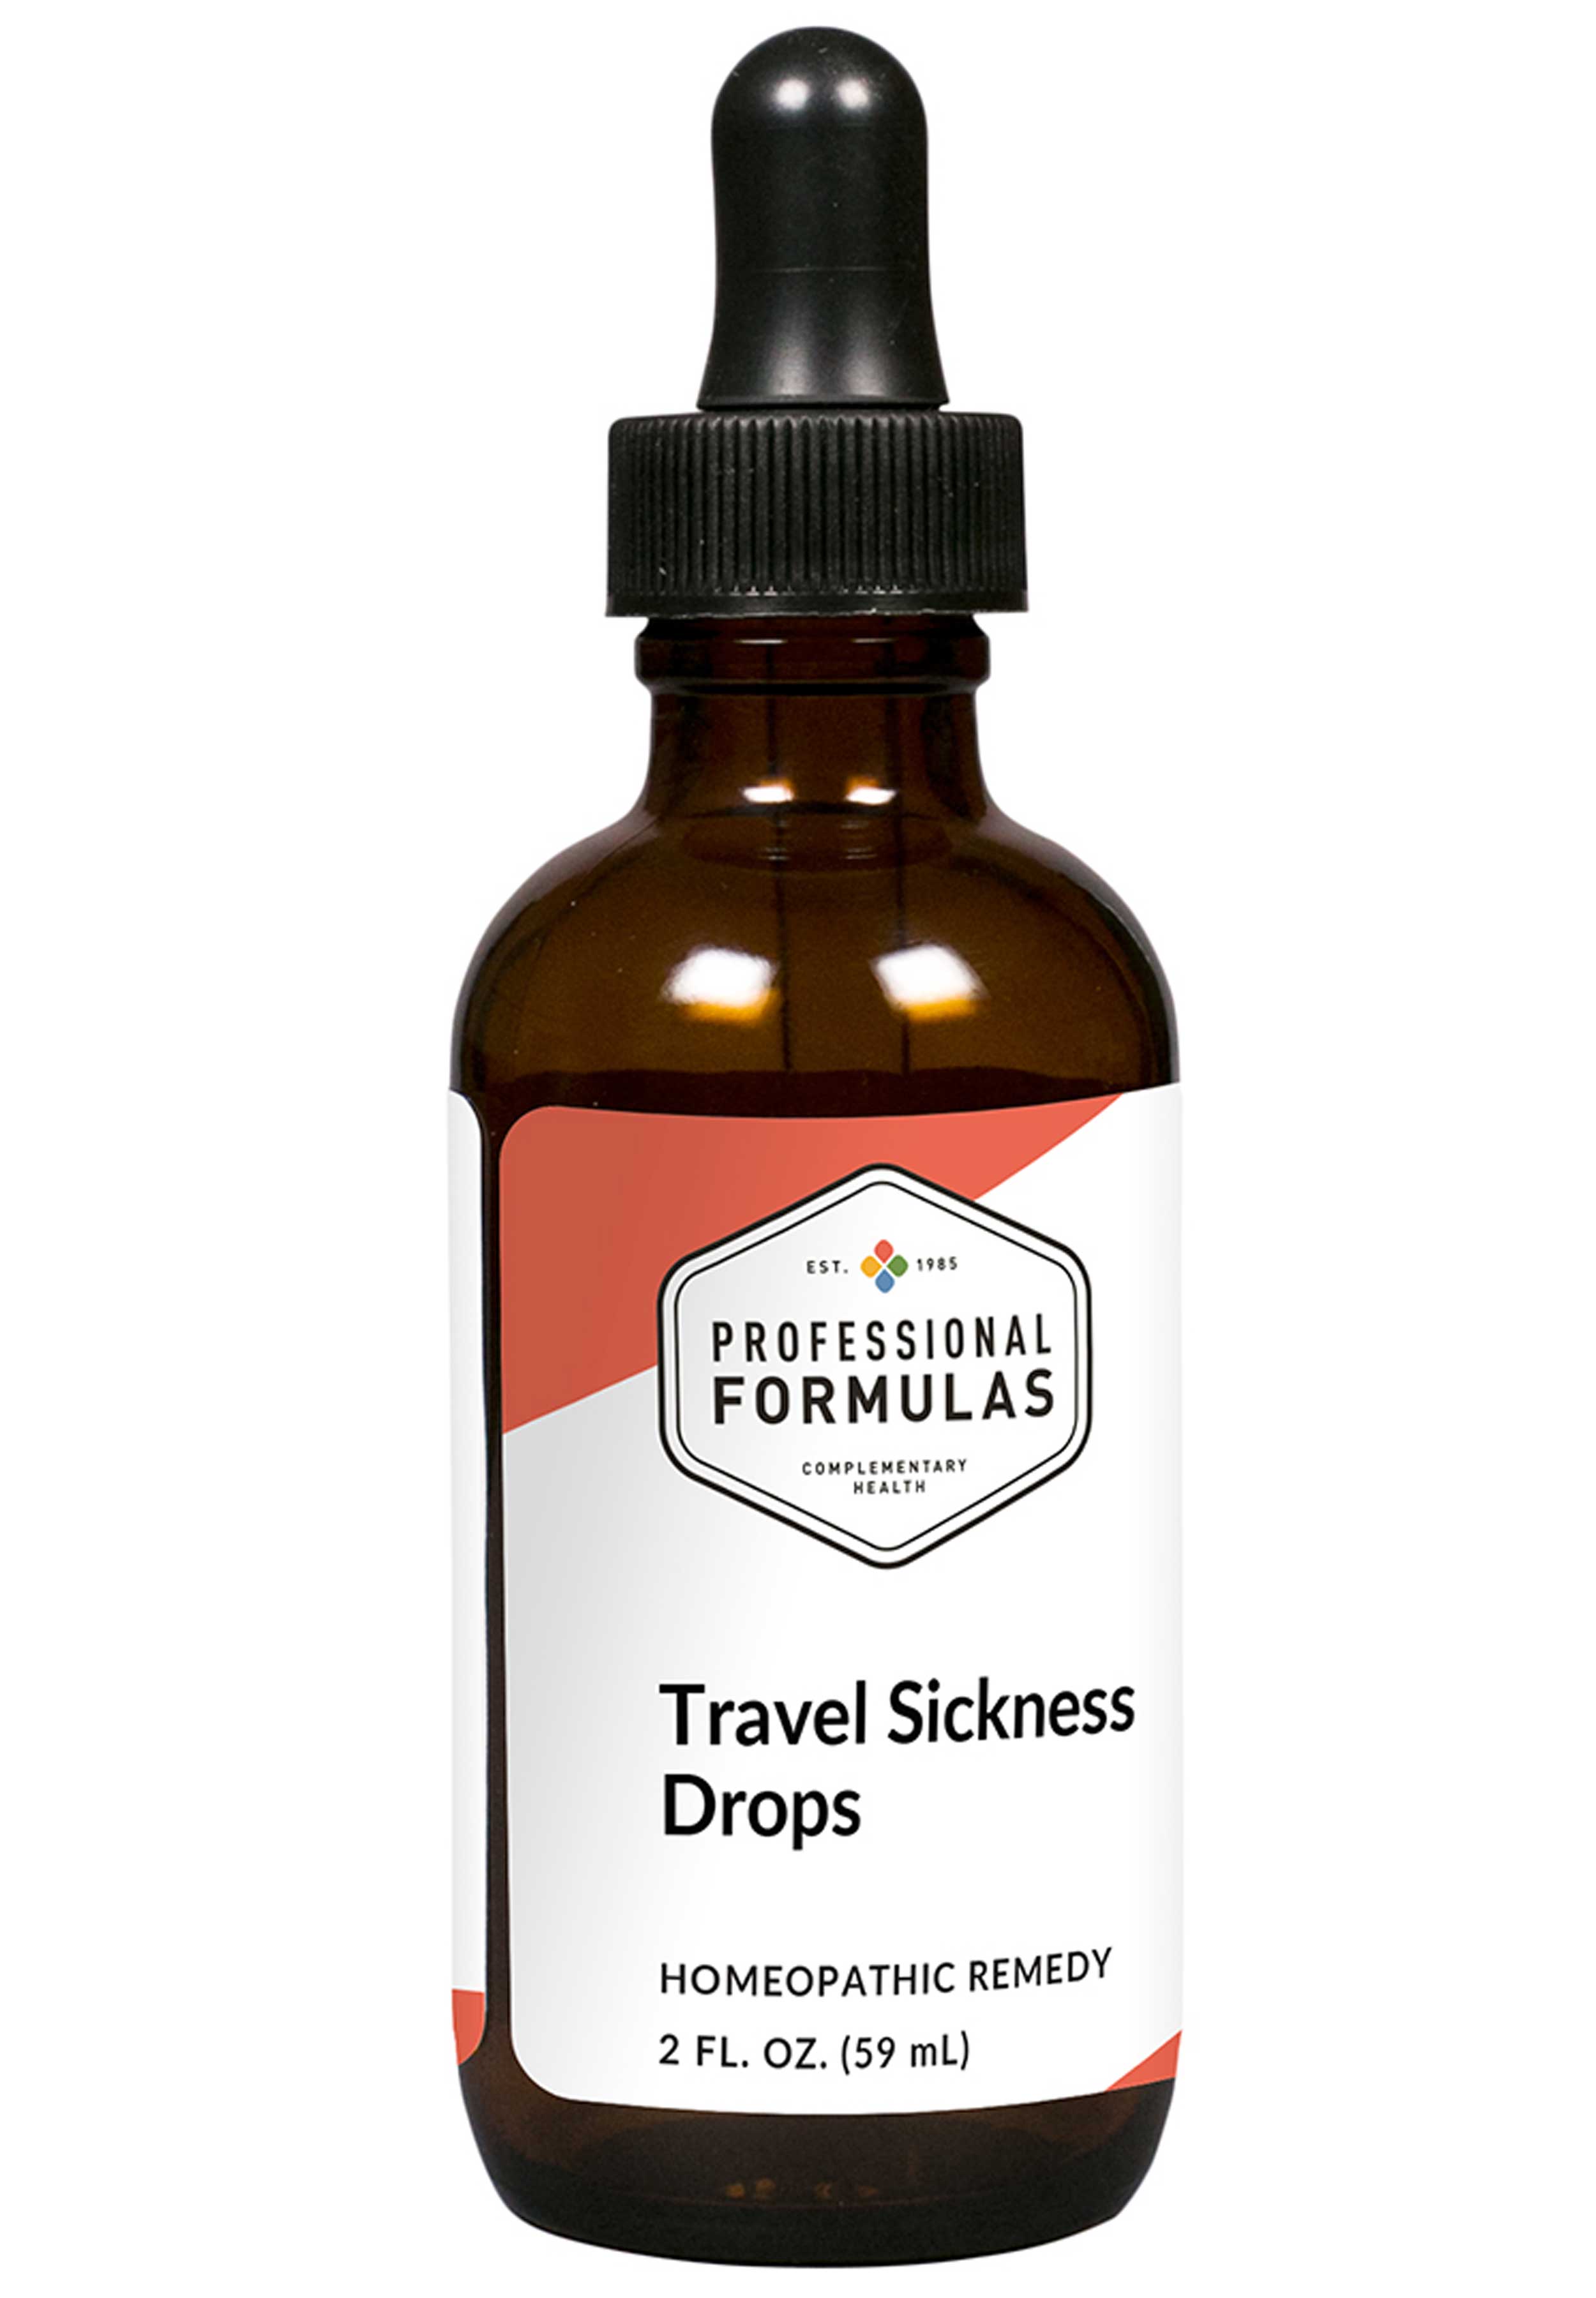 Professional Formulas Travel Sickness Formula Drops